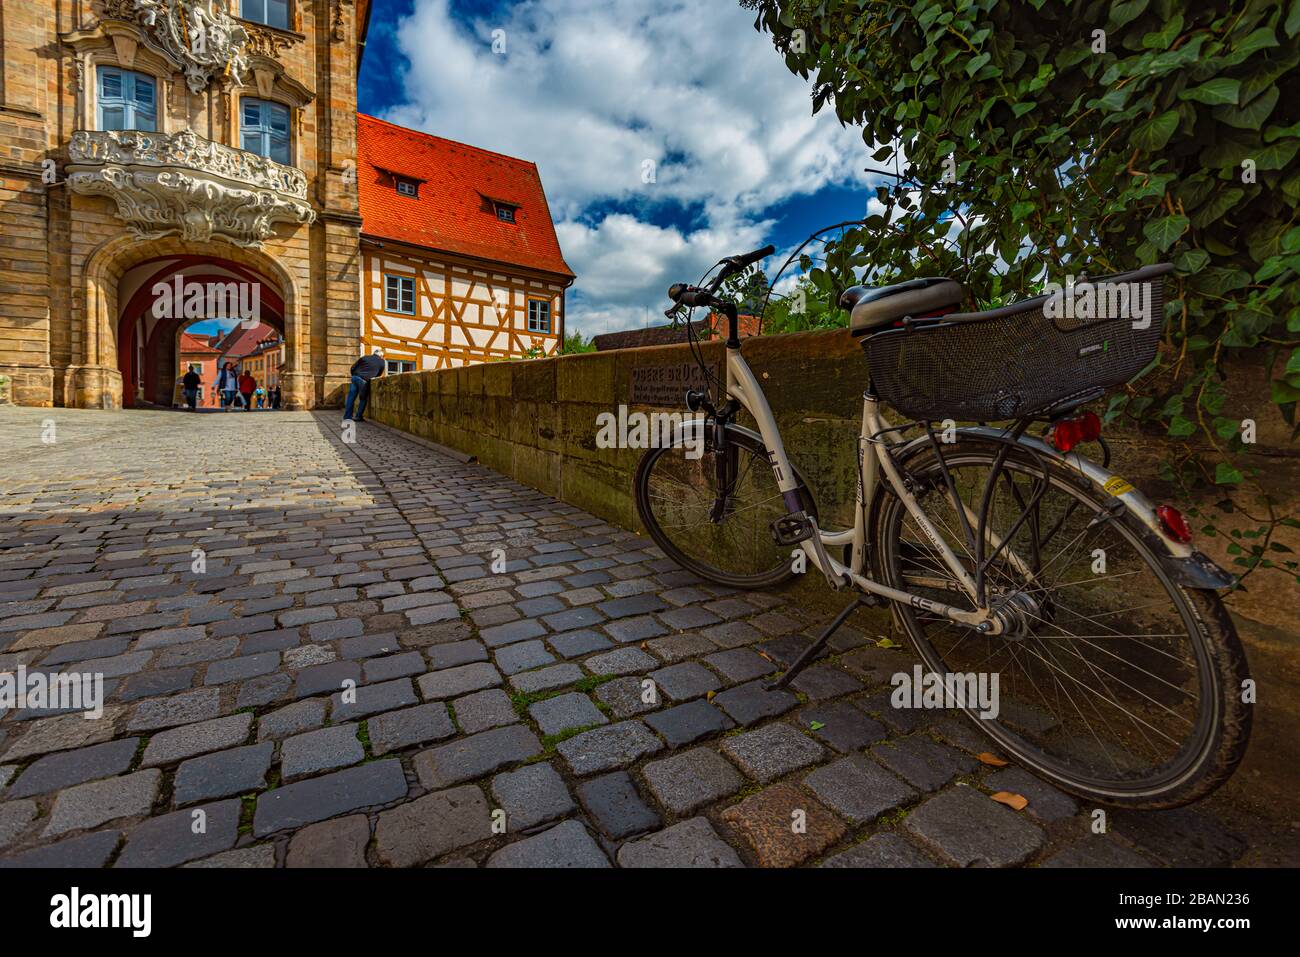 BAMBERG, ALLEMAGNE - 23 SEPTEMBRE 2014 : ville de Bamberg en Allemagne. Hôtel de ville en arrière-plan avec ciel bleu nuageux. Architecture et voyages en EUR Banque D'Images